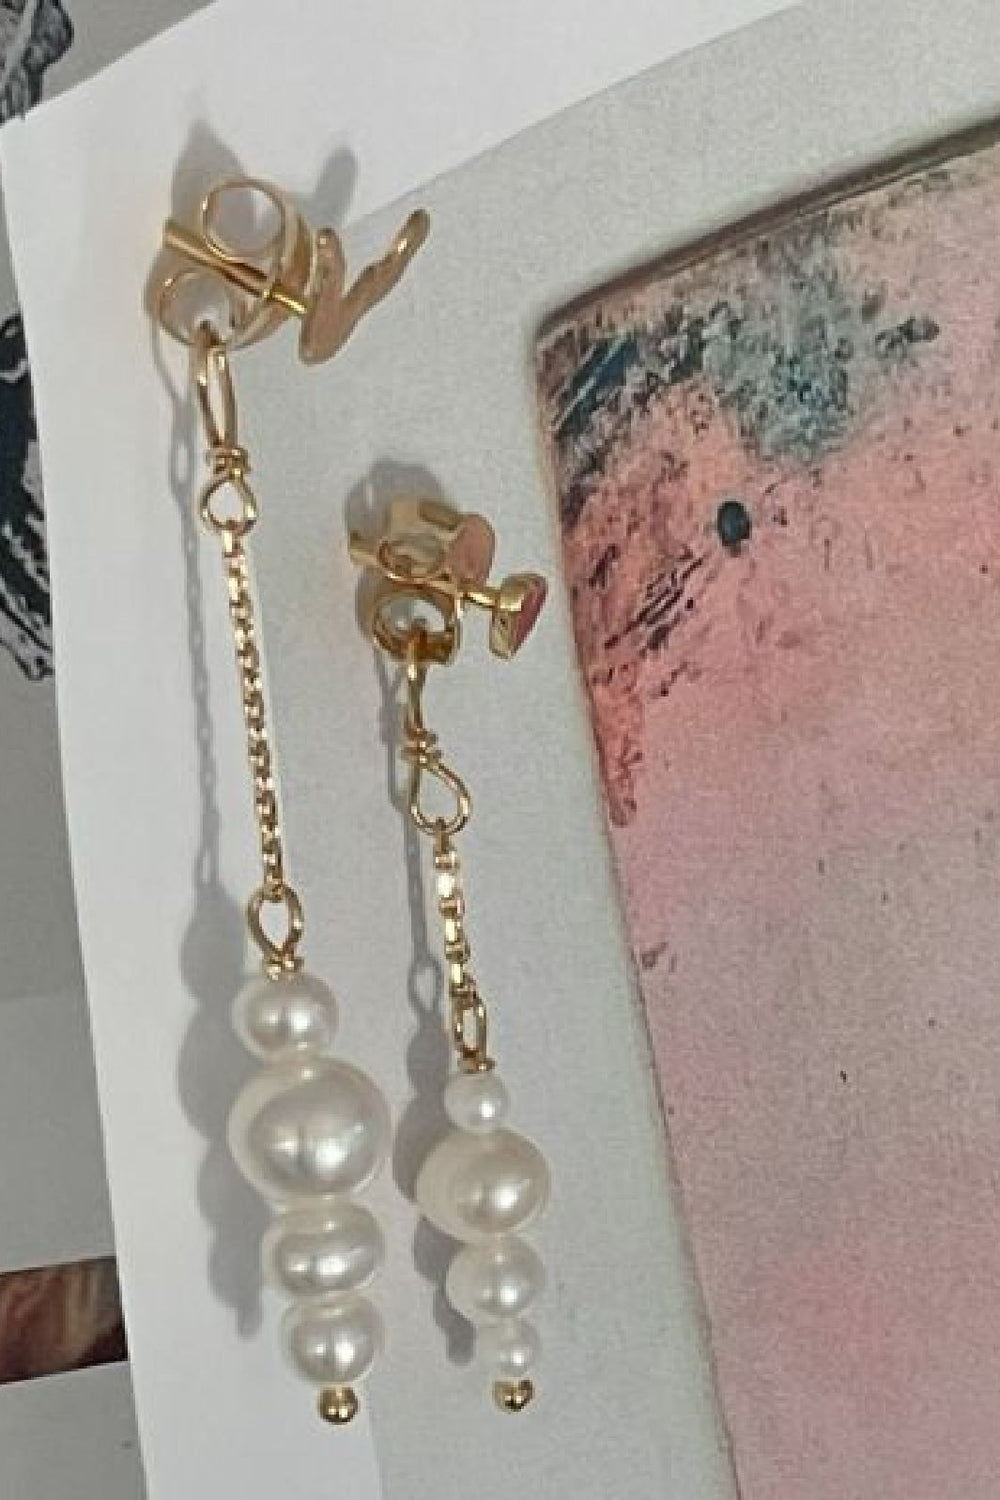 Stine A - Petit Pearl Berries Behind Ear Earring 1311-02 - Gold Øreringe 